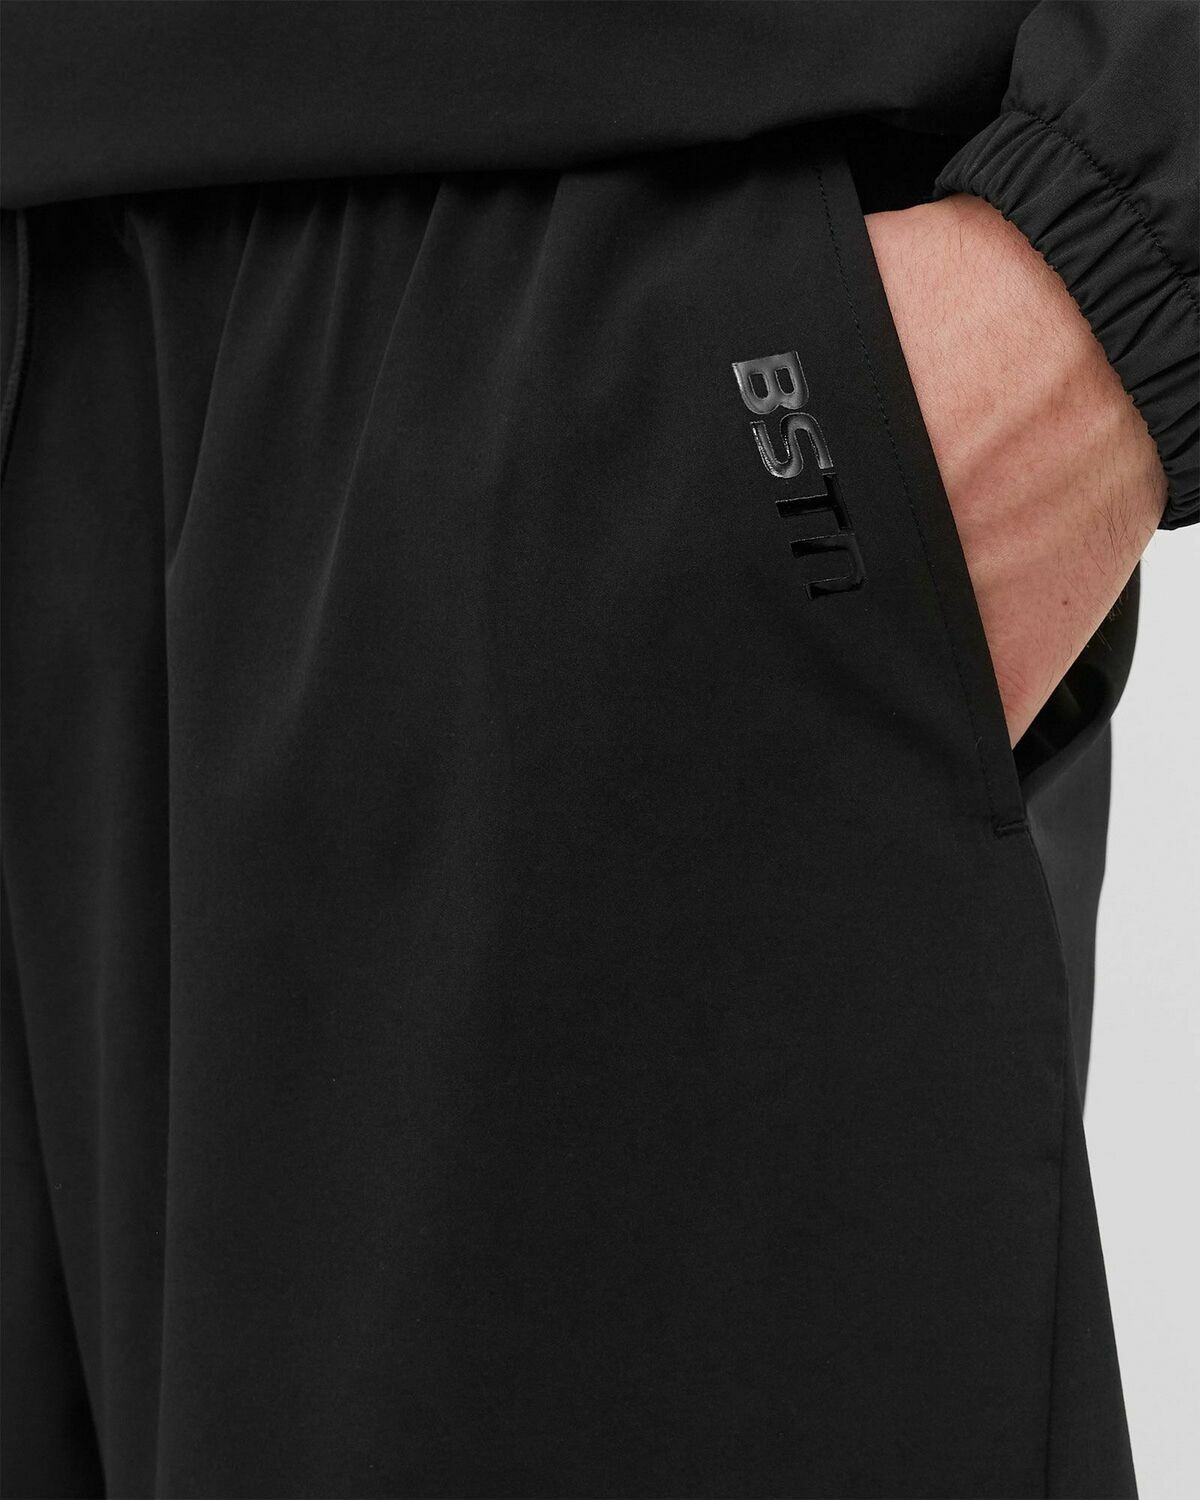 Bstn Brand Training Shorts Black - Mens - Sport & Team Shorts